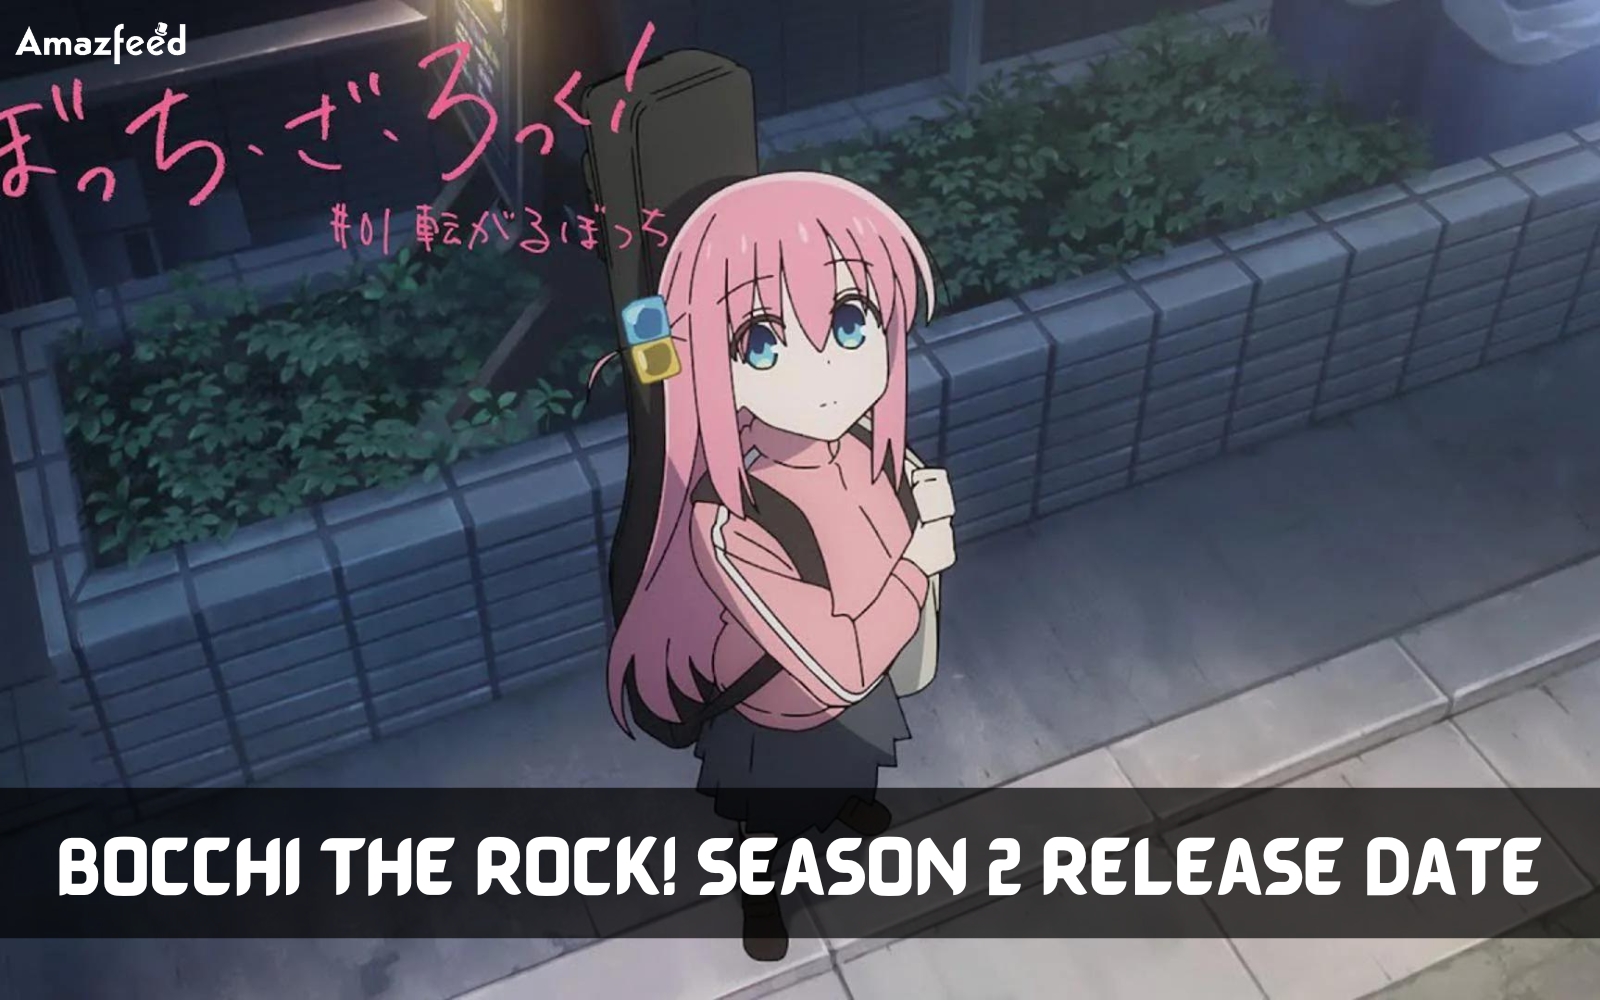 Bocchi the rock! Season 2 release date